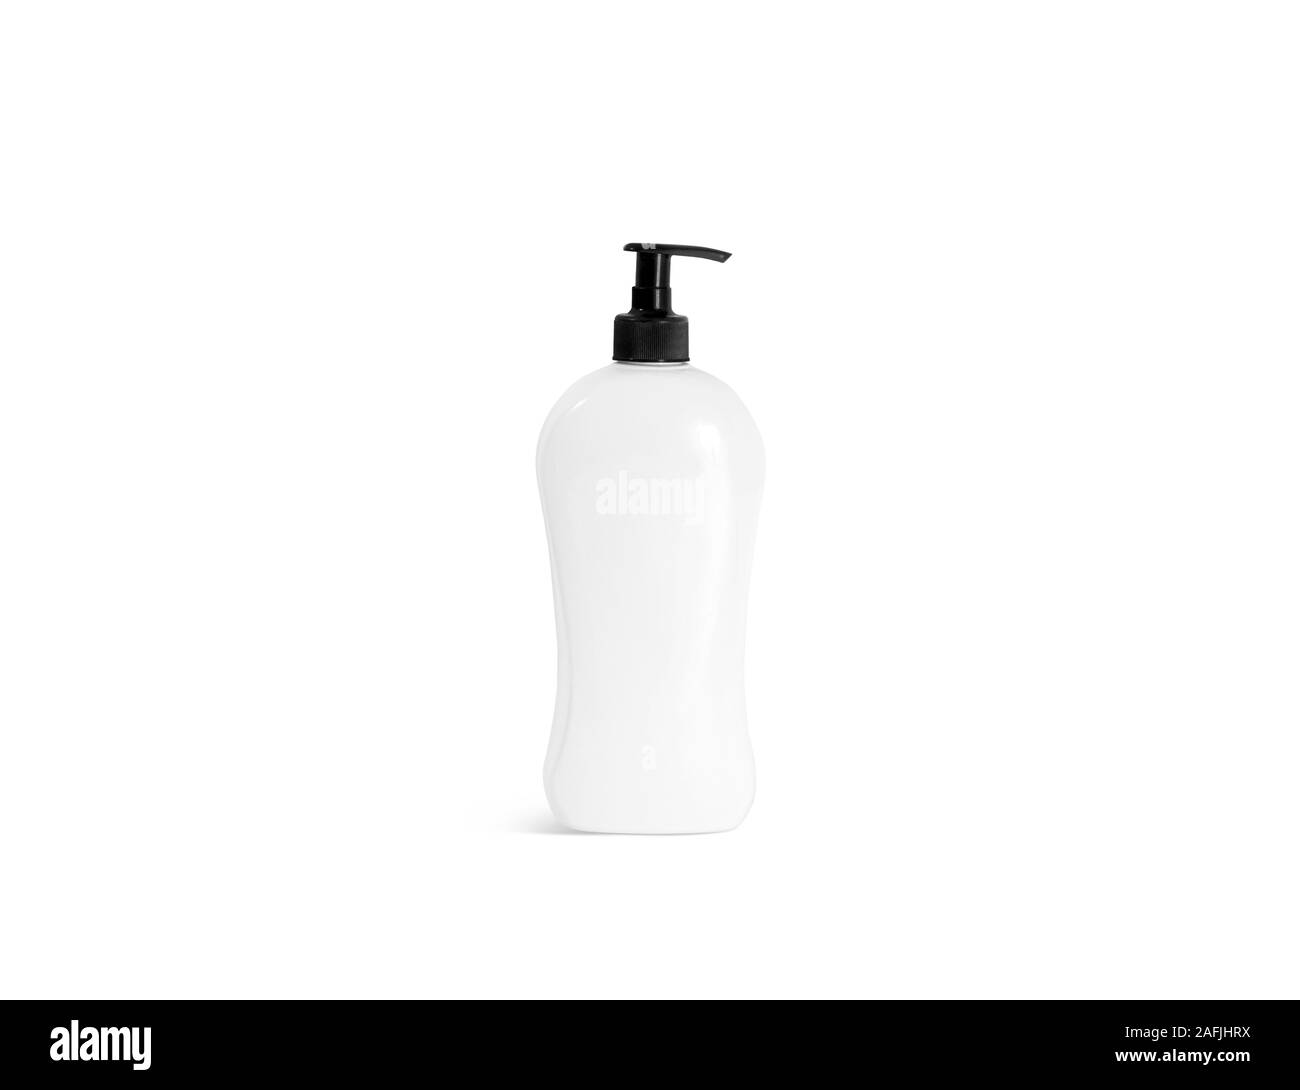 Flacone bianco shampoo con mockup a pompa nera, vista frontale Foto Stock